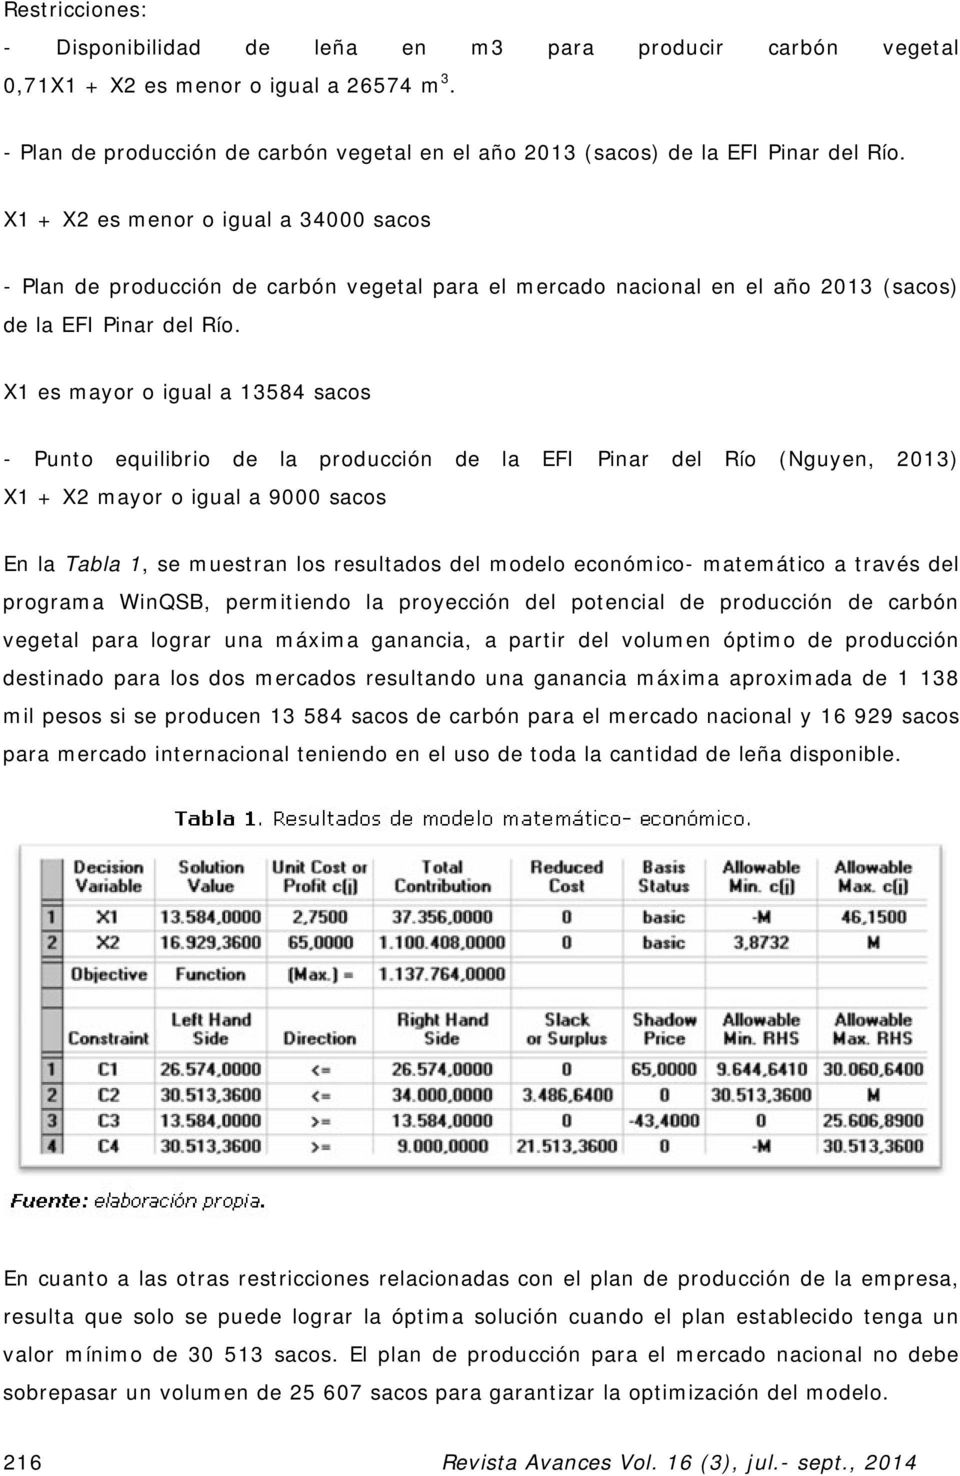 X1 + X2 es menor o igual a 34000 sacos - Plan de producción de carbón vegetal para el mercado nacional en el año 2013 (sacos) de la EFI Pinar del Río.